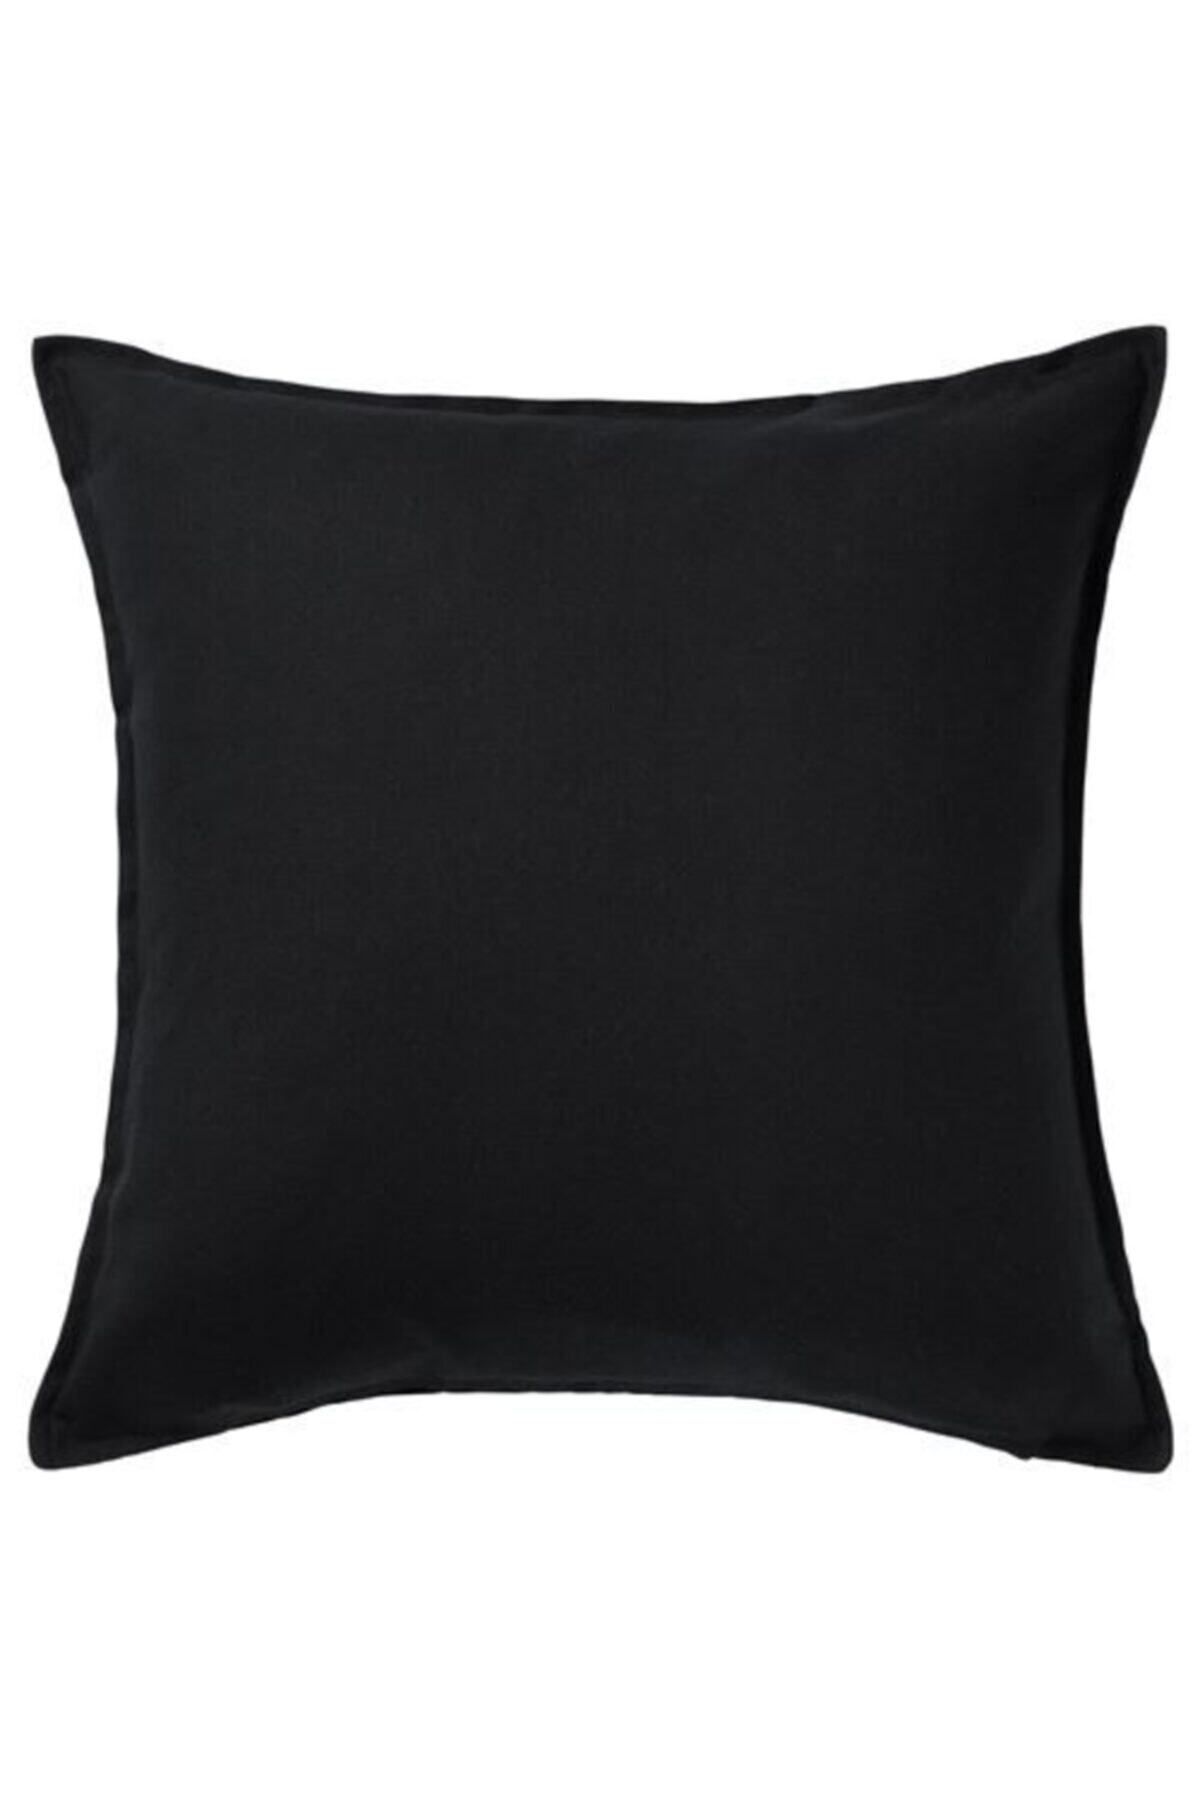 IKEA Minder Kırlent Kılıfı Meridyendukkan 50x50 Cm Siyah Rengi Fermuarlı Yastık Kılıfı